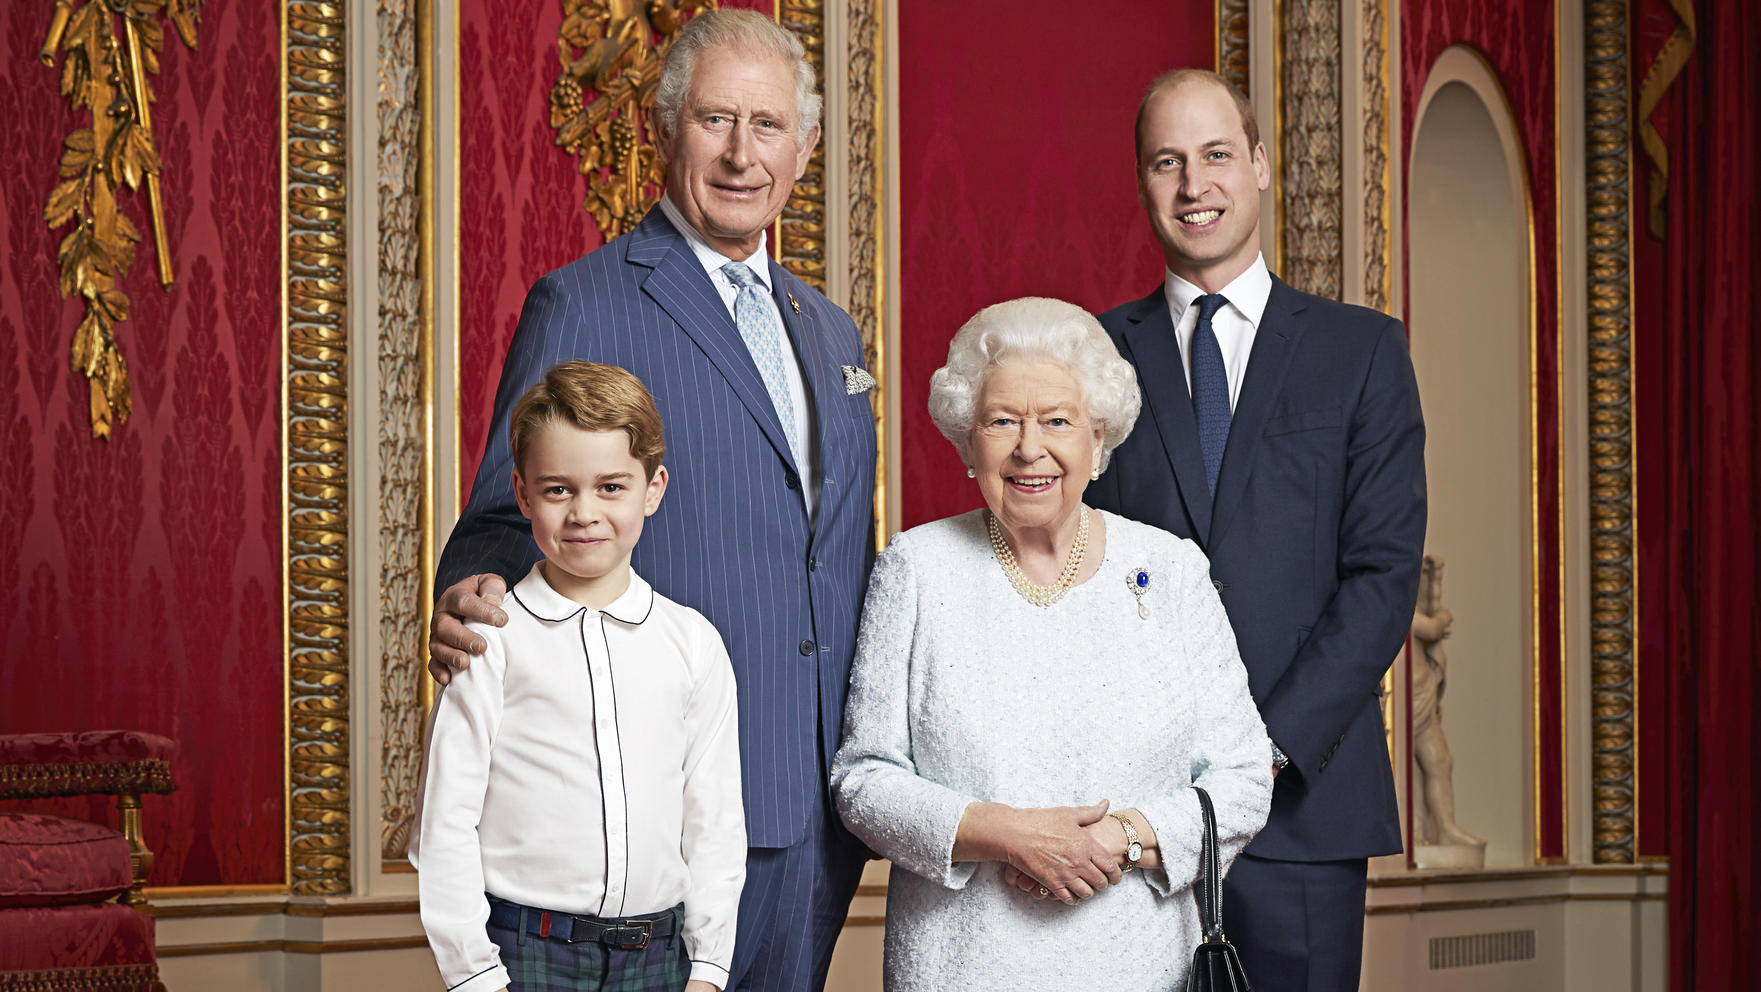 Prinz George, Prinz Charles, Prinz William und Queen Elizabeth II. auf einem Portrait.